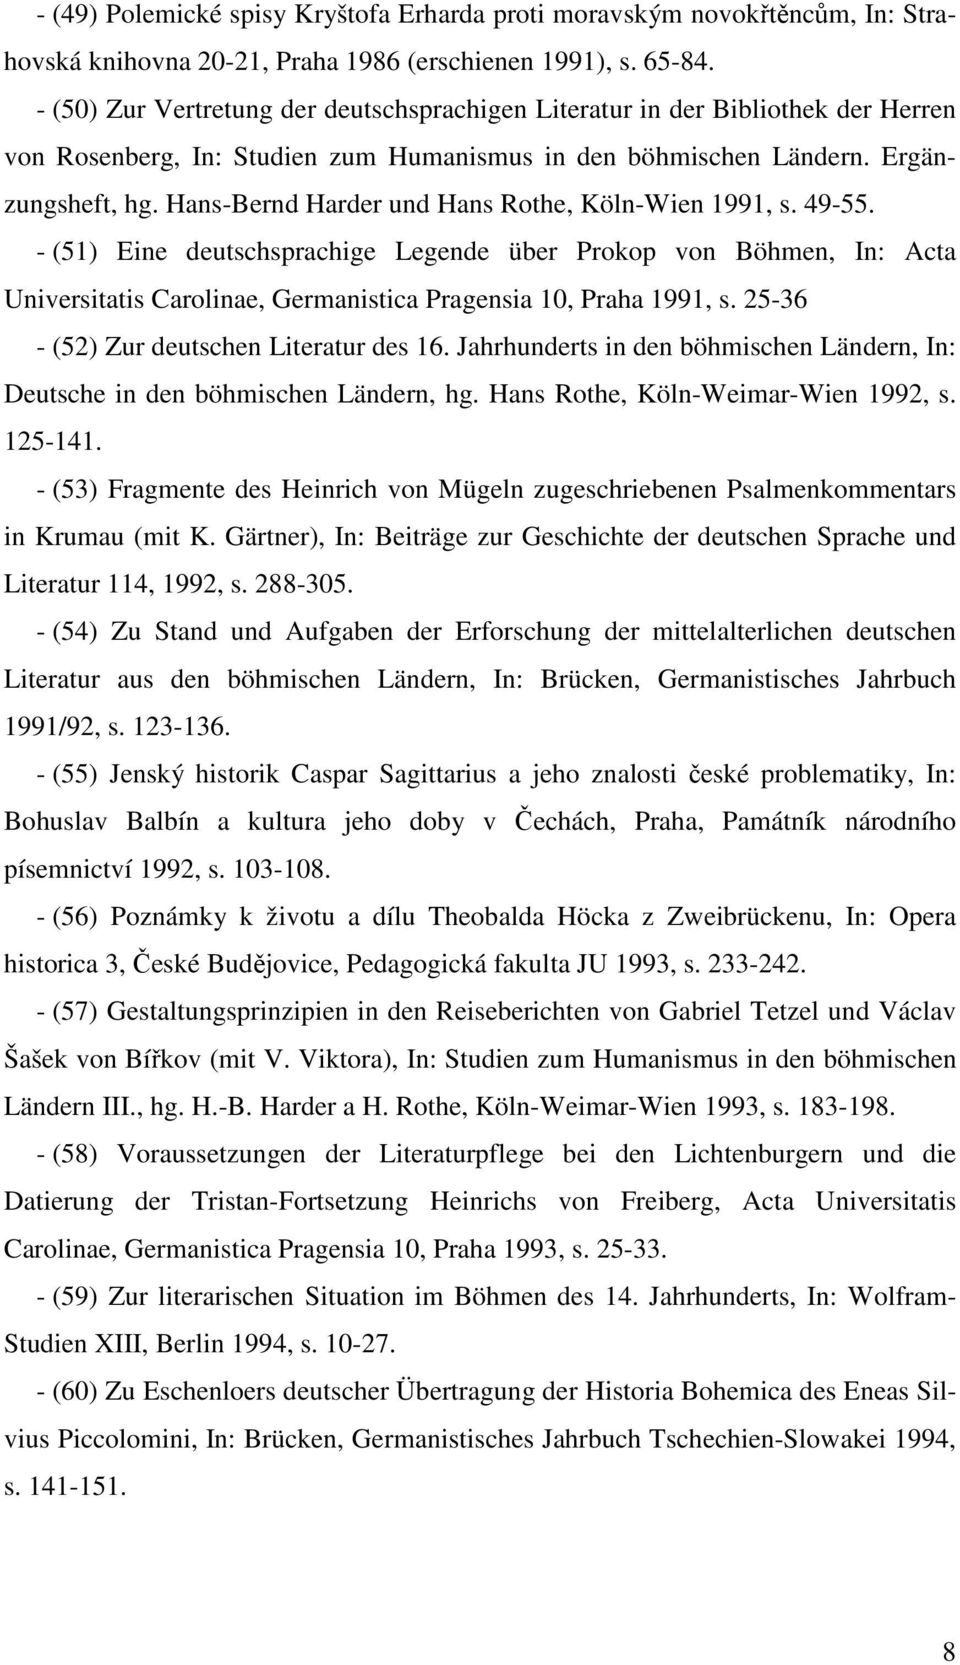 Hans-Bernd Harder und Hans Rothe, Köln-Wien 1991, s. 49-55. - (51) Eine deutschsprachige Legende über Prokop von Böhmen, In: Acta Universitatis Carolinae, Germanistica Pragensia 10, Praha 1991, s.